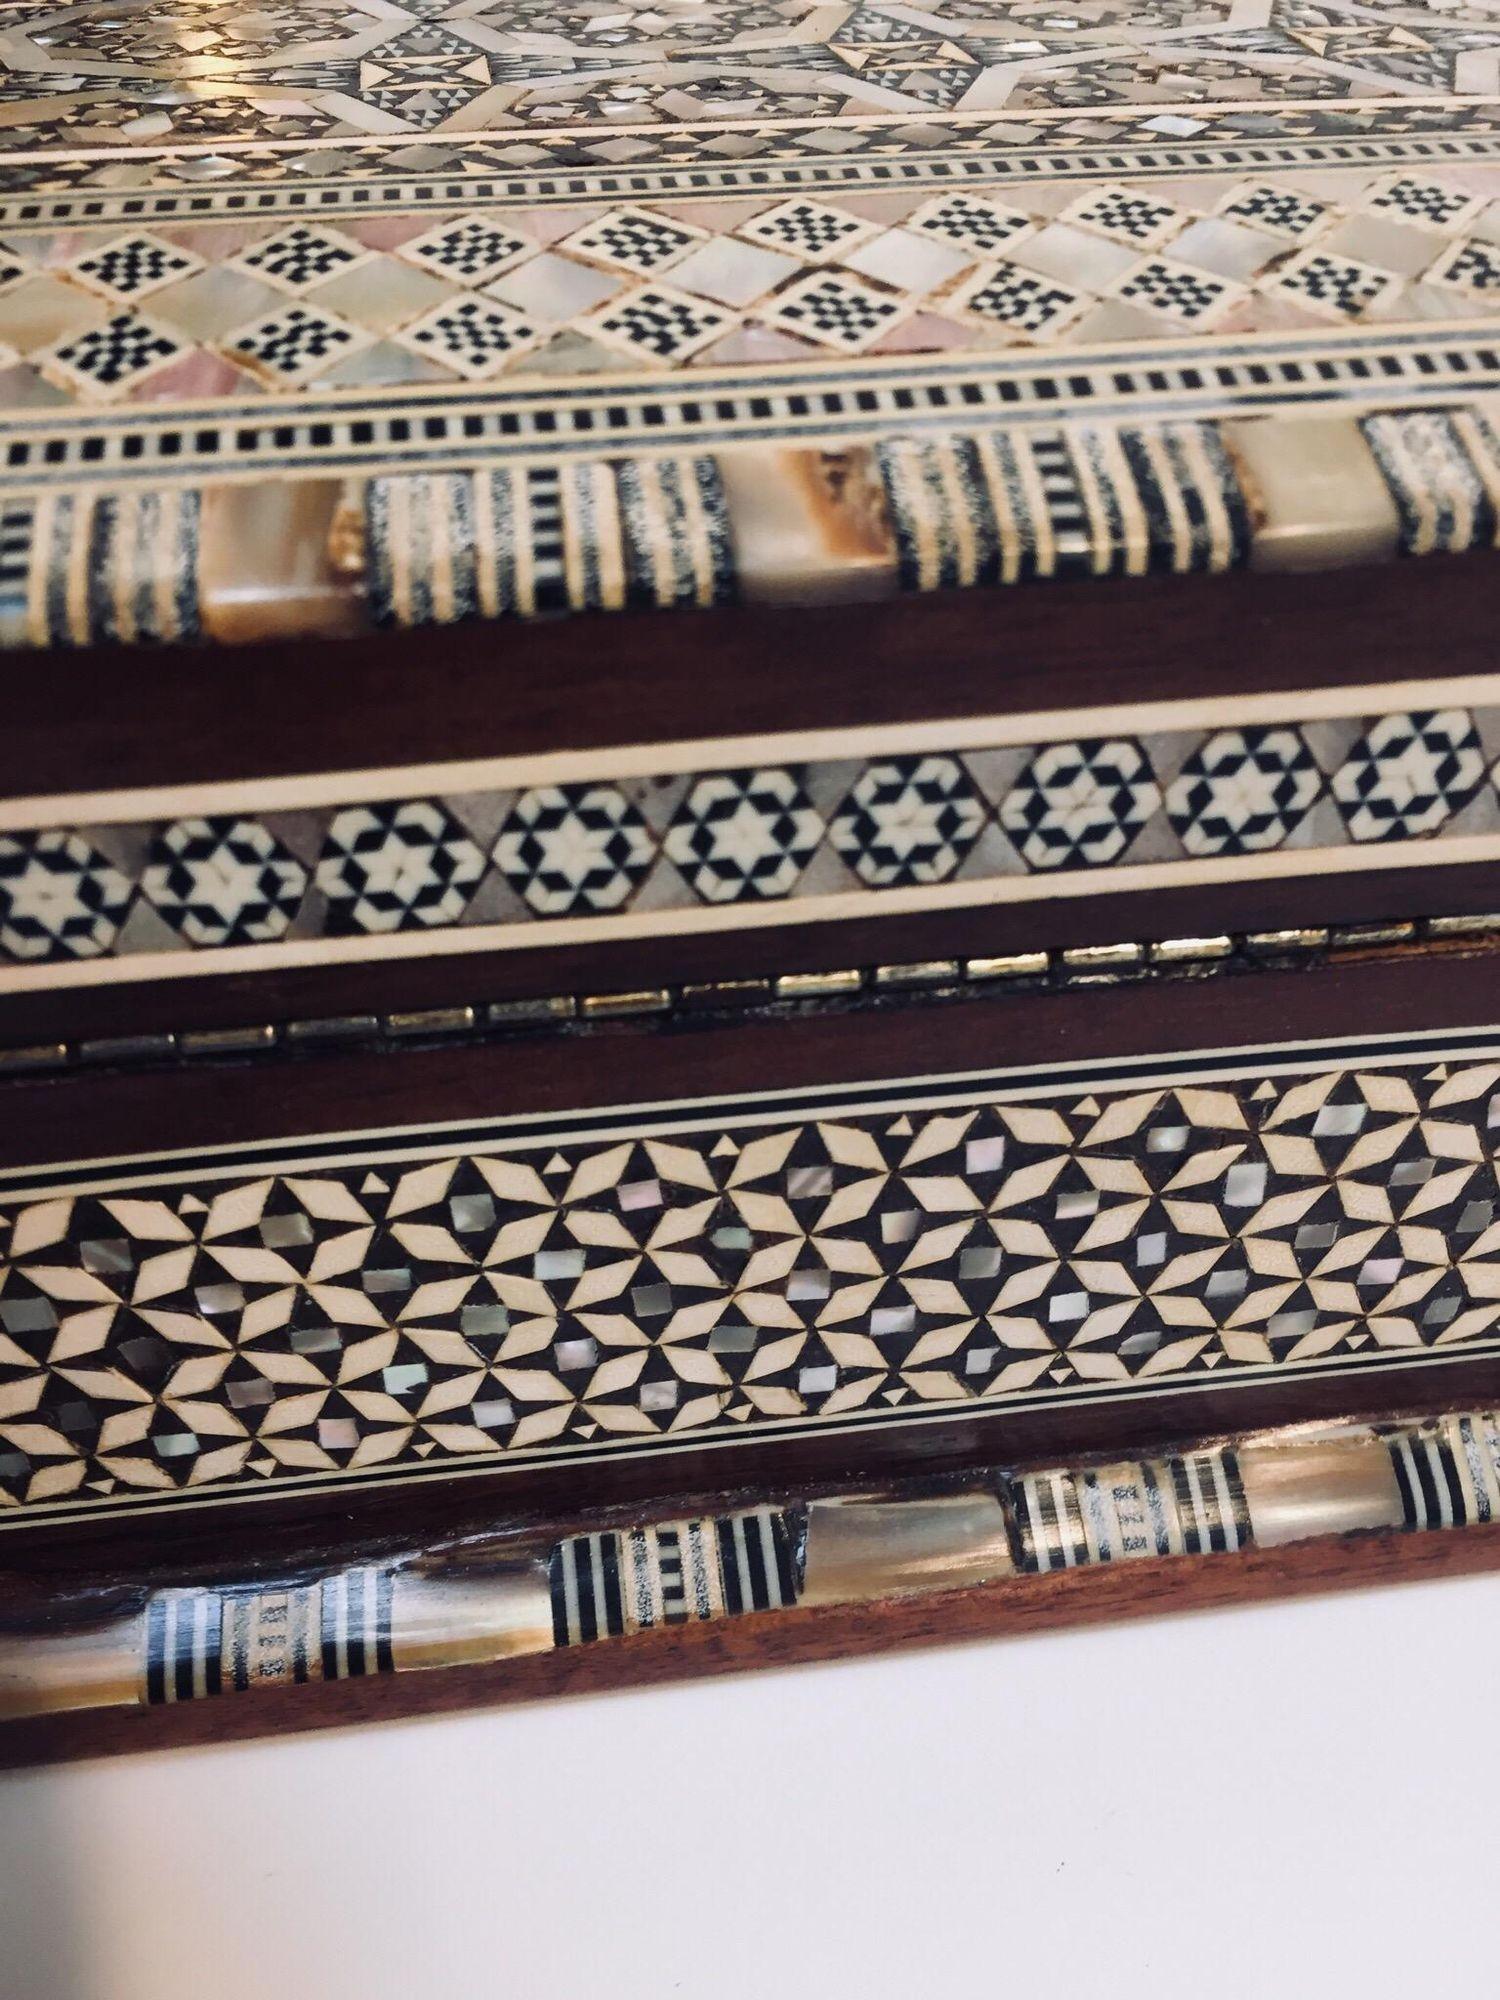 Boîte à bijoux vintage en bois mauresque du Moyen-Orient incrustée de marqueterie.
Boîte du Moyen-Orient fabriquée à la main en micro-mosaïques mauresques très fines, et un motif géométrique mauresque hexagonal et floral continu orne de façon